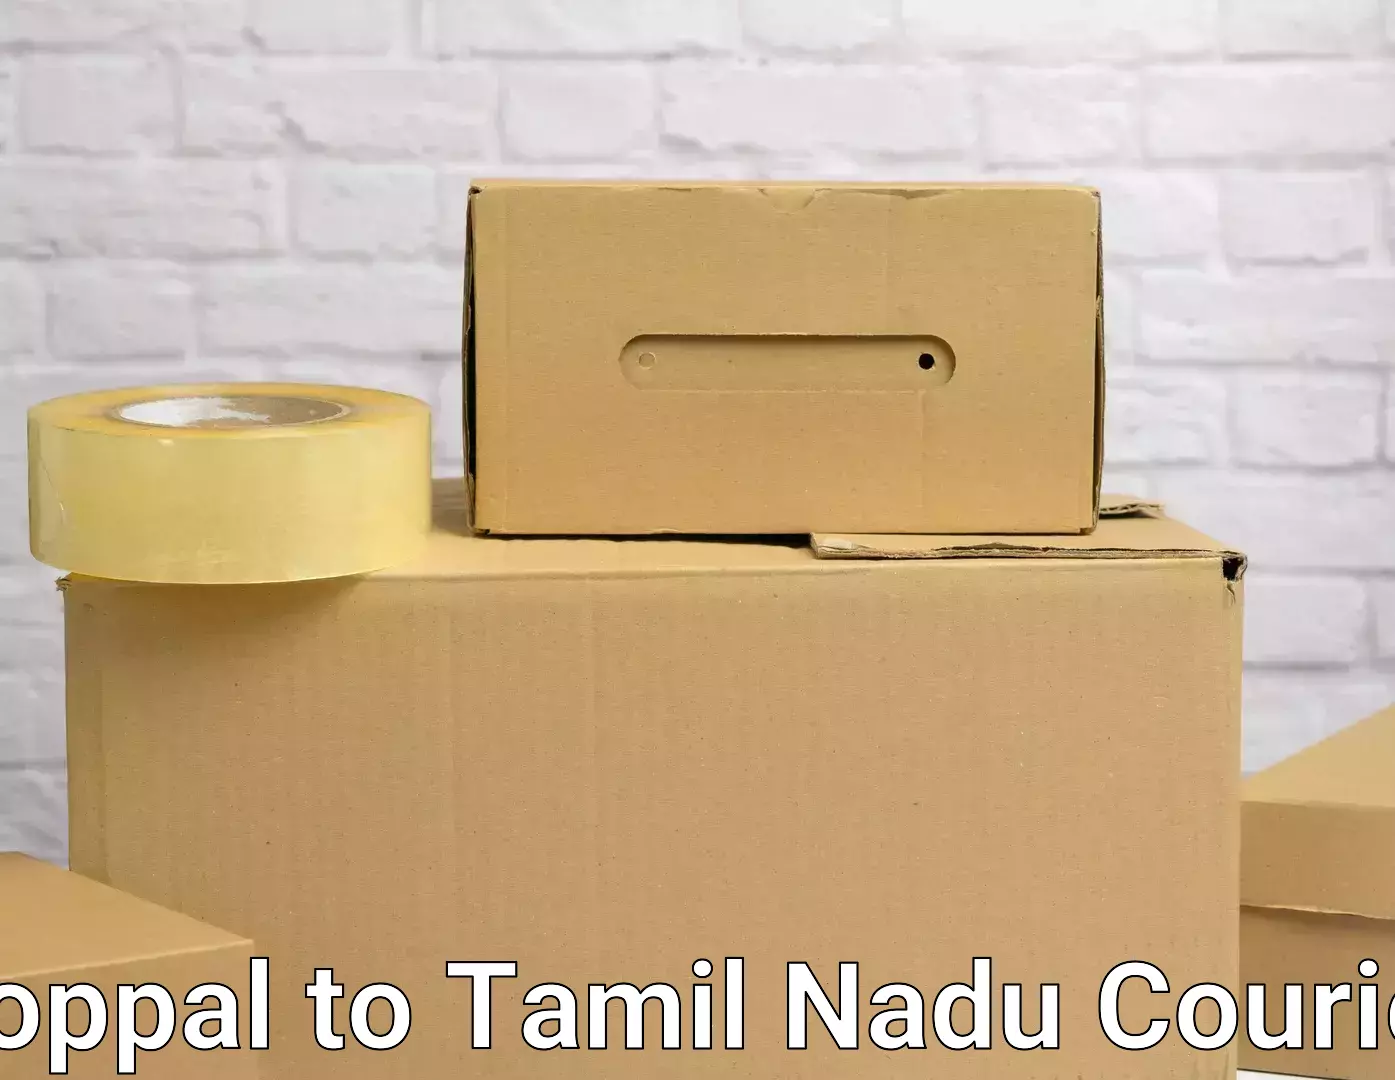 Furniture transport professionals Koppal to Tamil Nadu